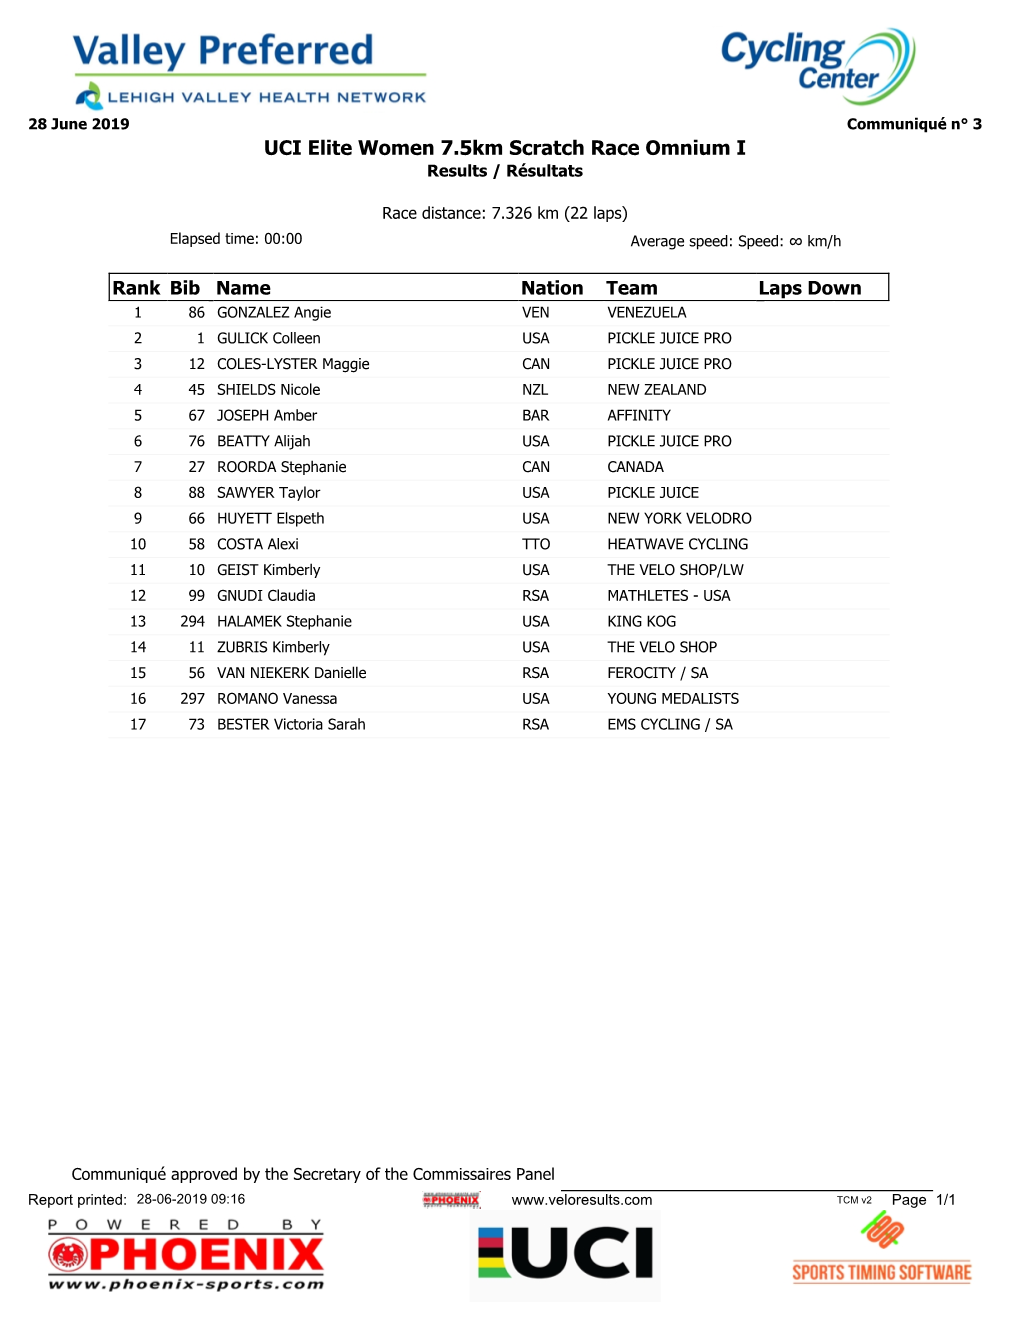 UCI Elite Women 7.5Km Scratch Race Omnium I Results / Résultats